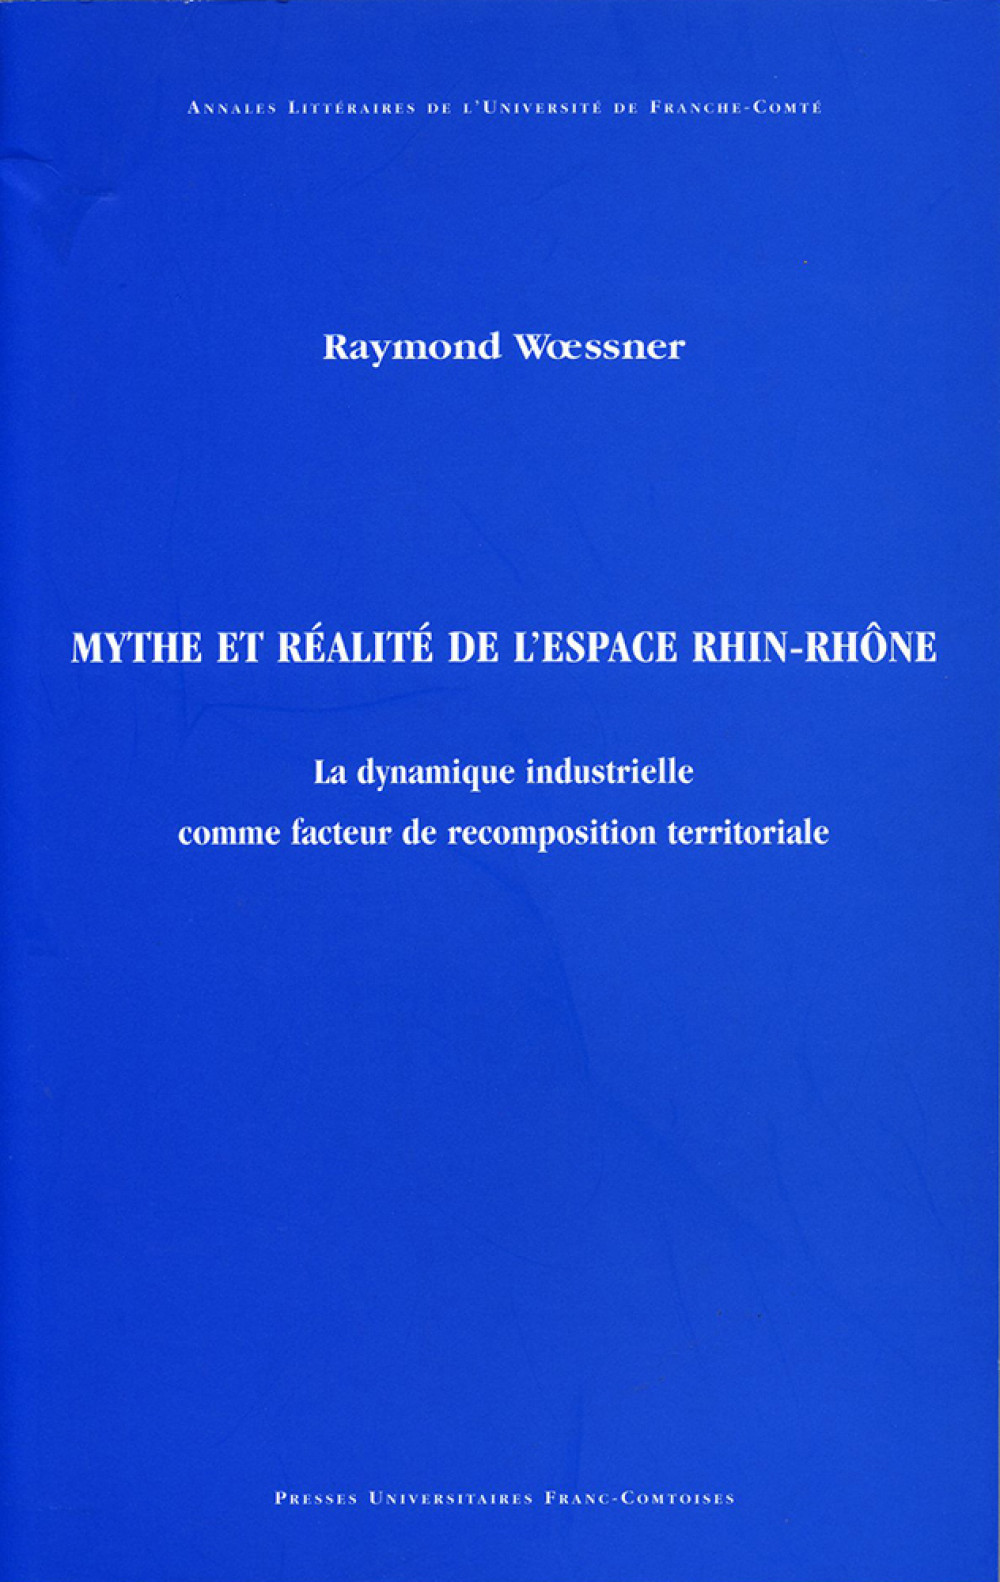 Mythe et réalité de l'espace Rhin-Rhône